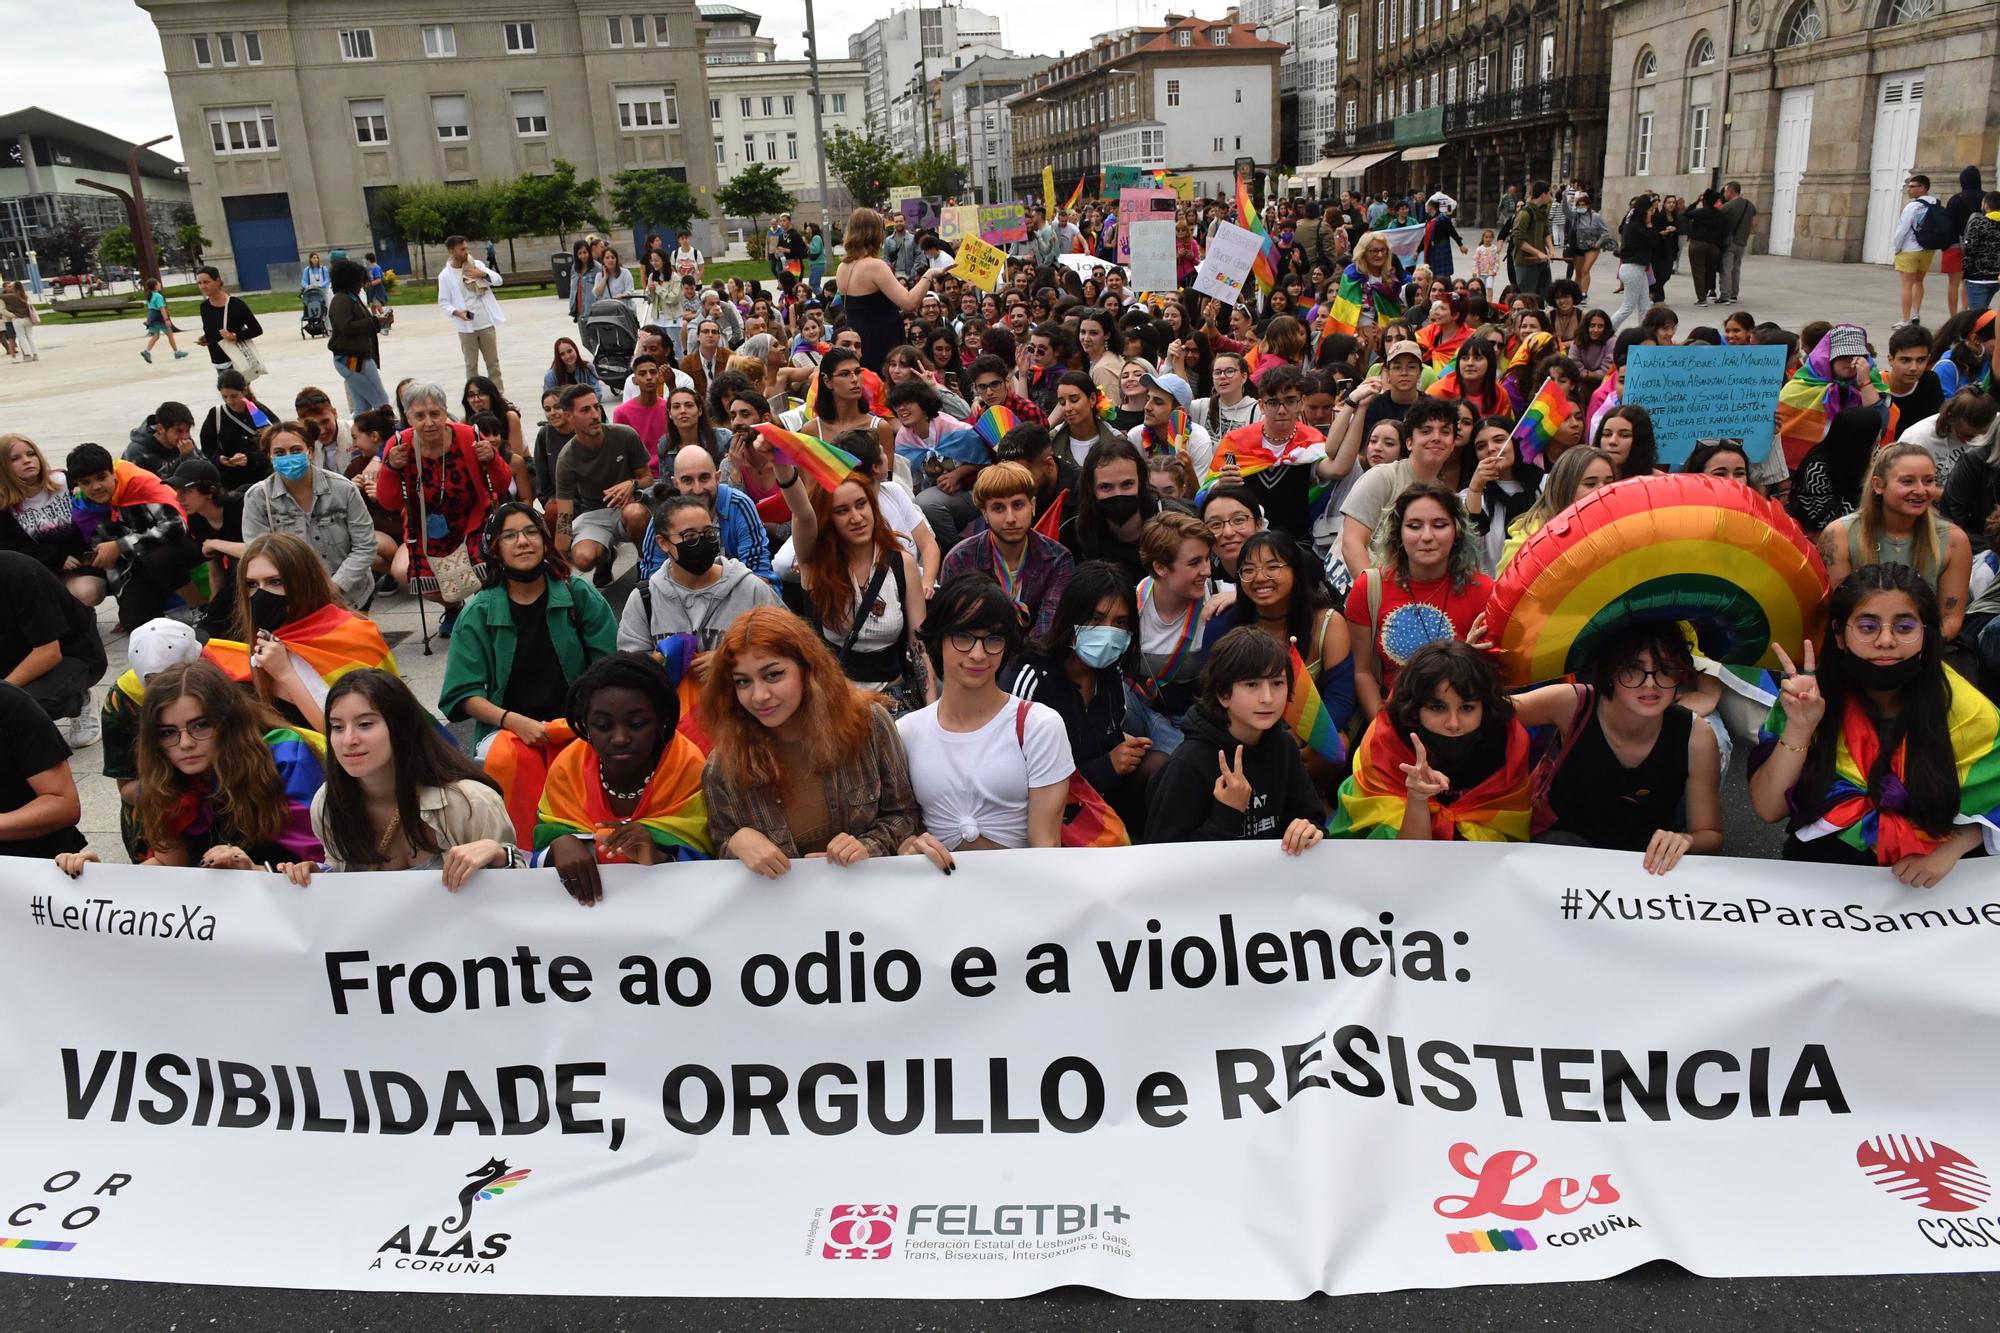 La manifestación del Orgullo LGBT recorre las calles de A Coruña